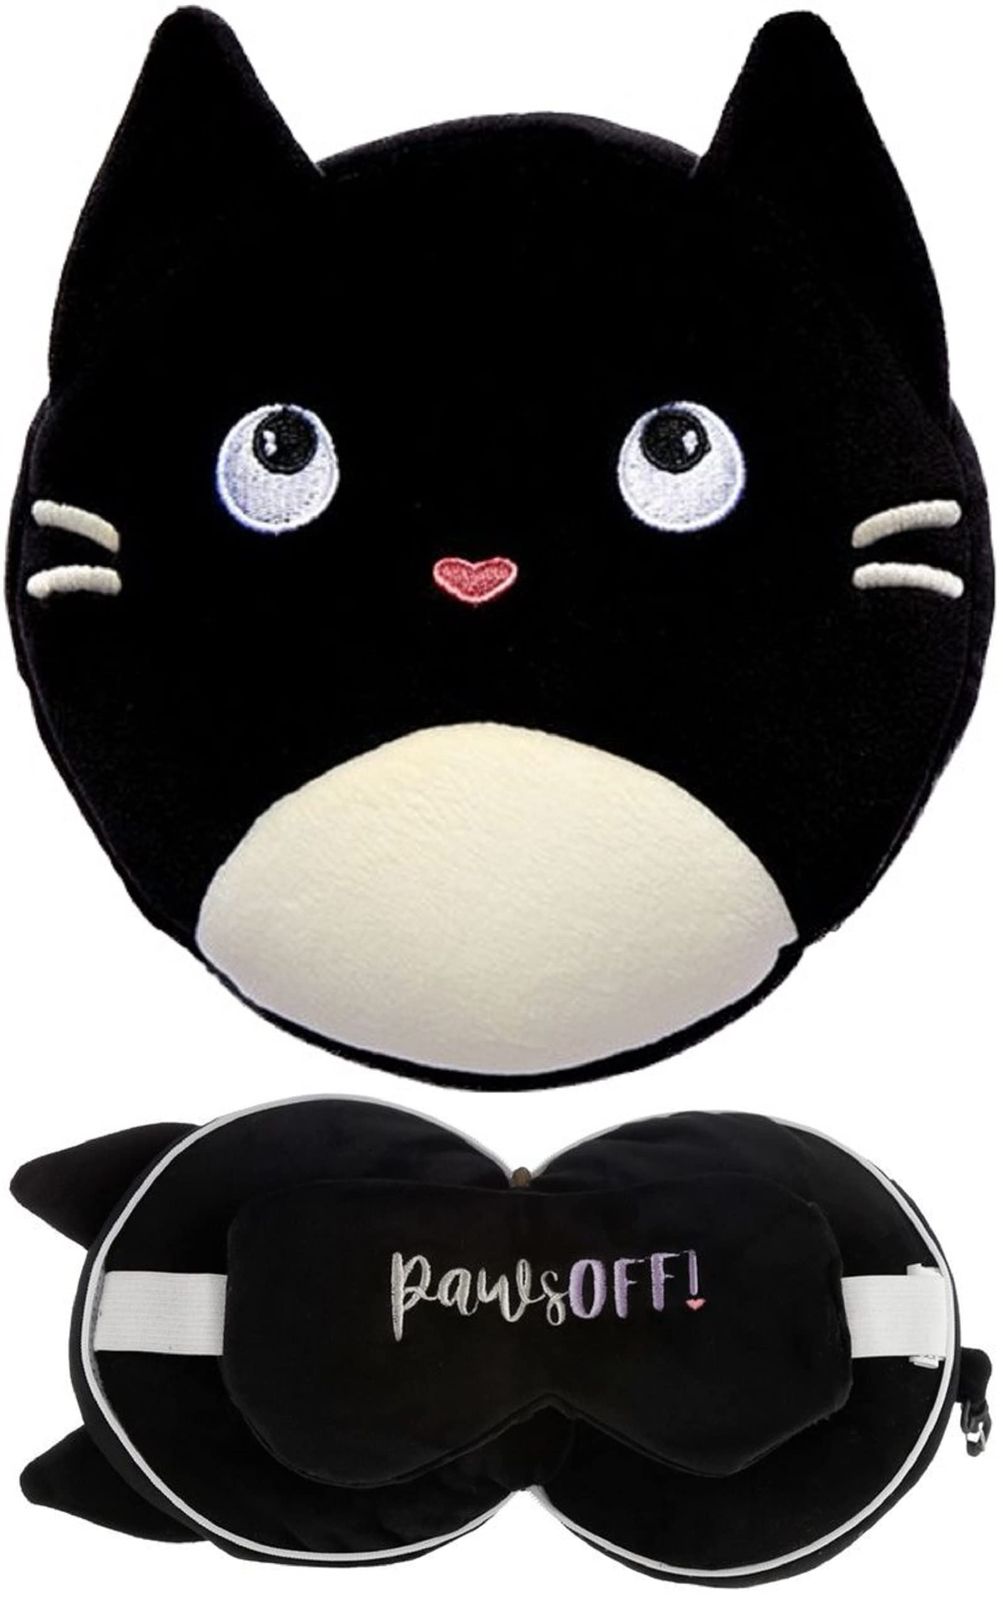 Relaxeazzz アイマスク付 もちもち ネックピロー 黒猫 かわいい ぬいぐるみ 一体型 アイマスク 旅行 飛行機 車 睡眠用 こども  プレゼント 日本正規品 [黒猫のフェリンファイン] - メルカリ